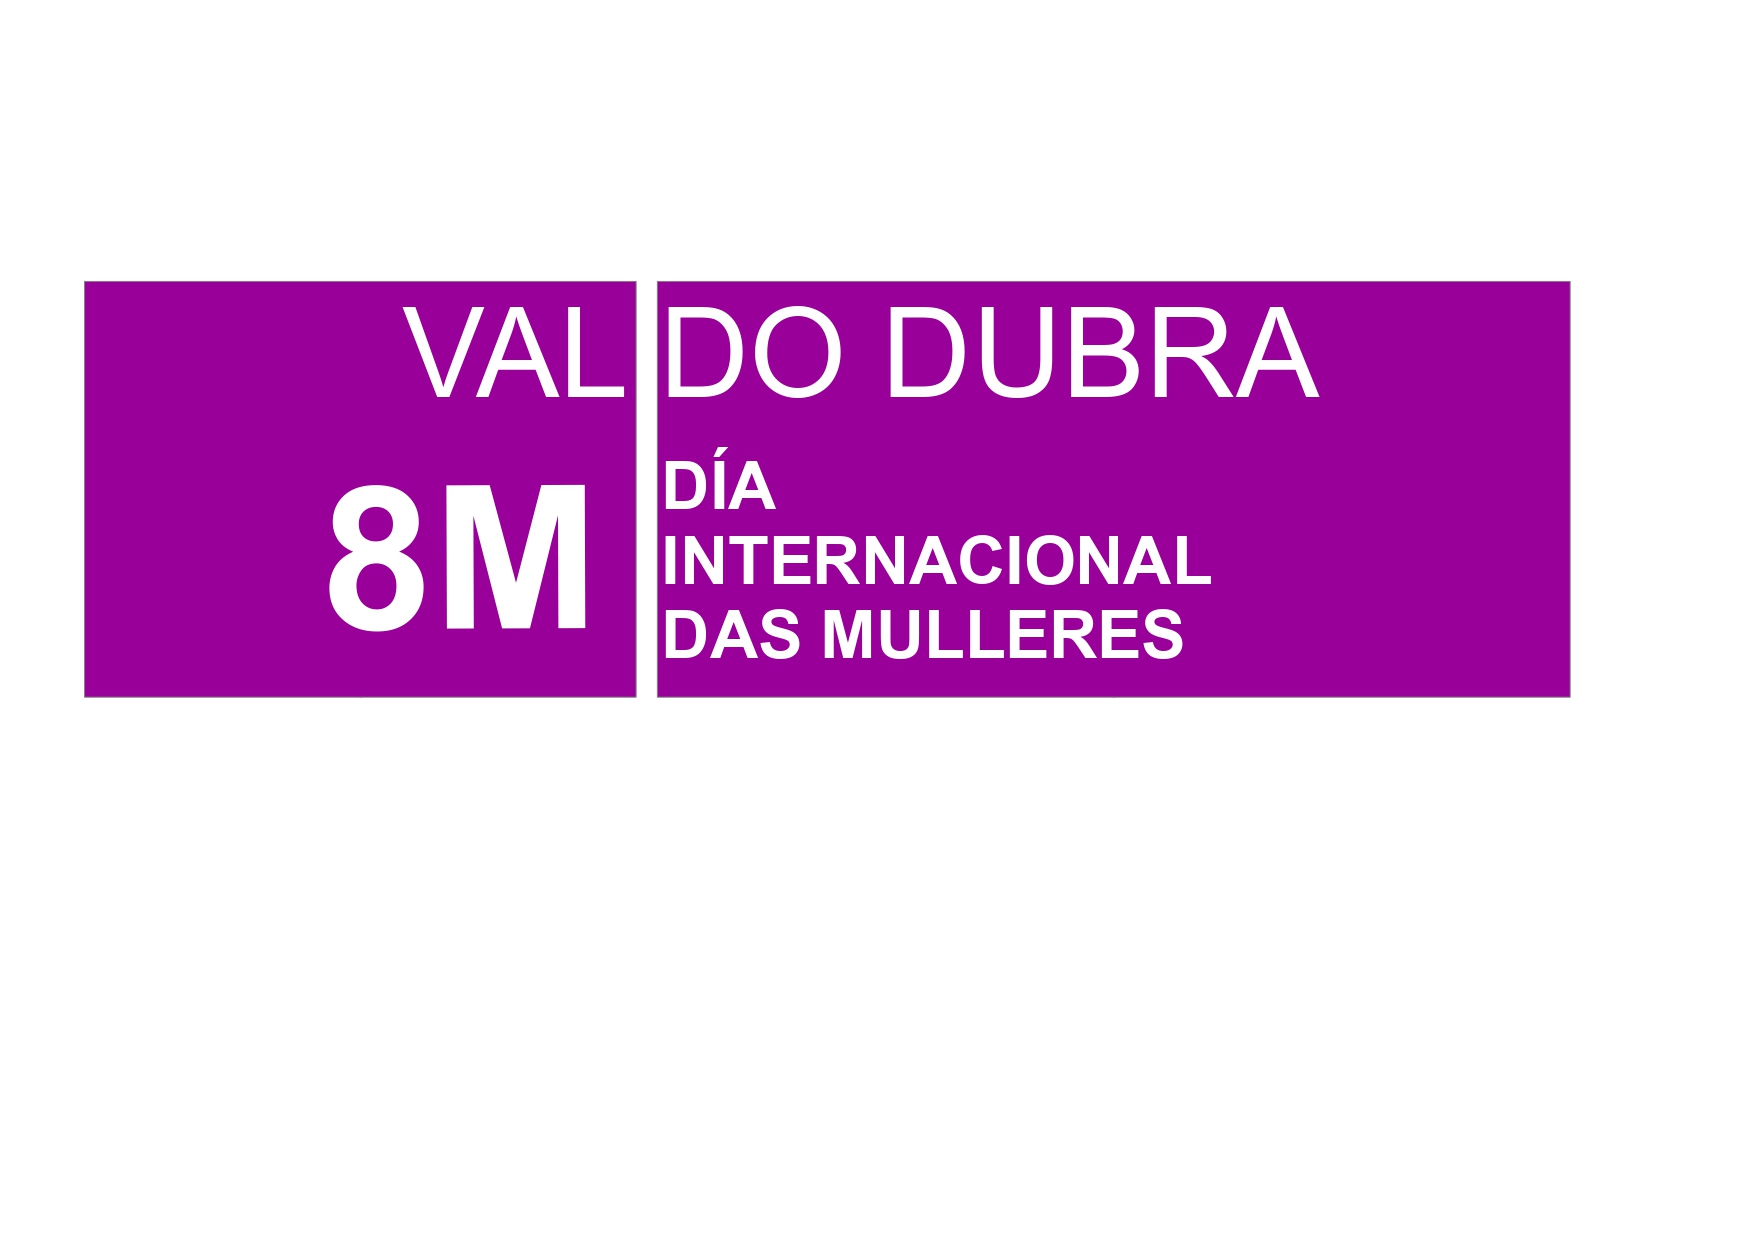 8 M VAL DO DUBRA